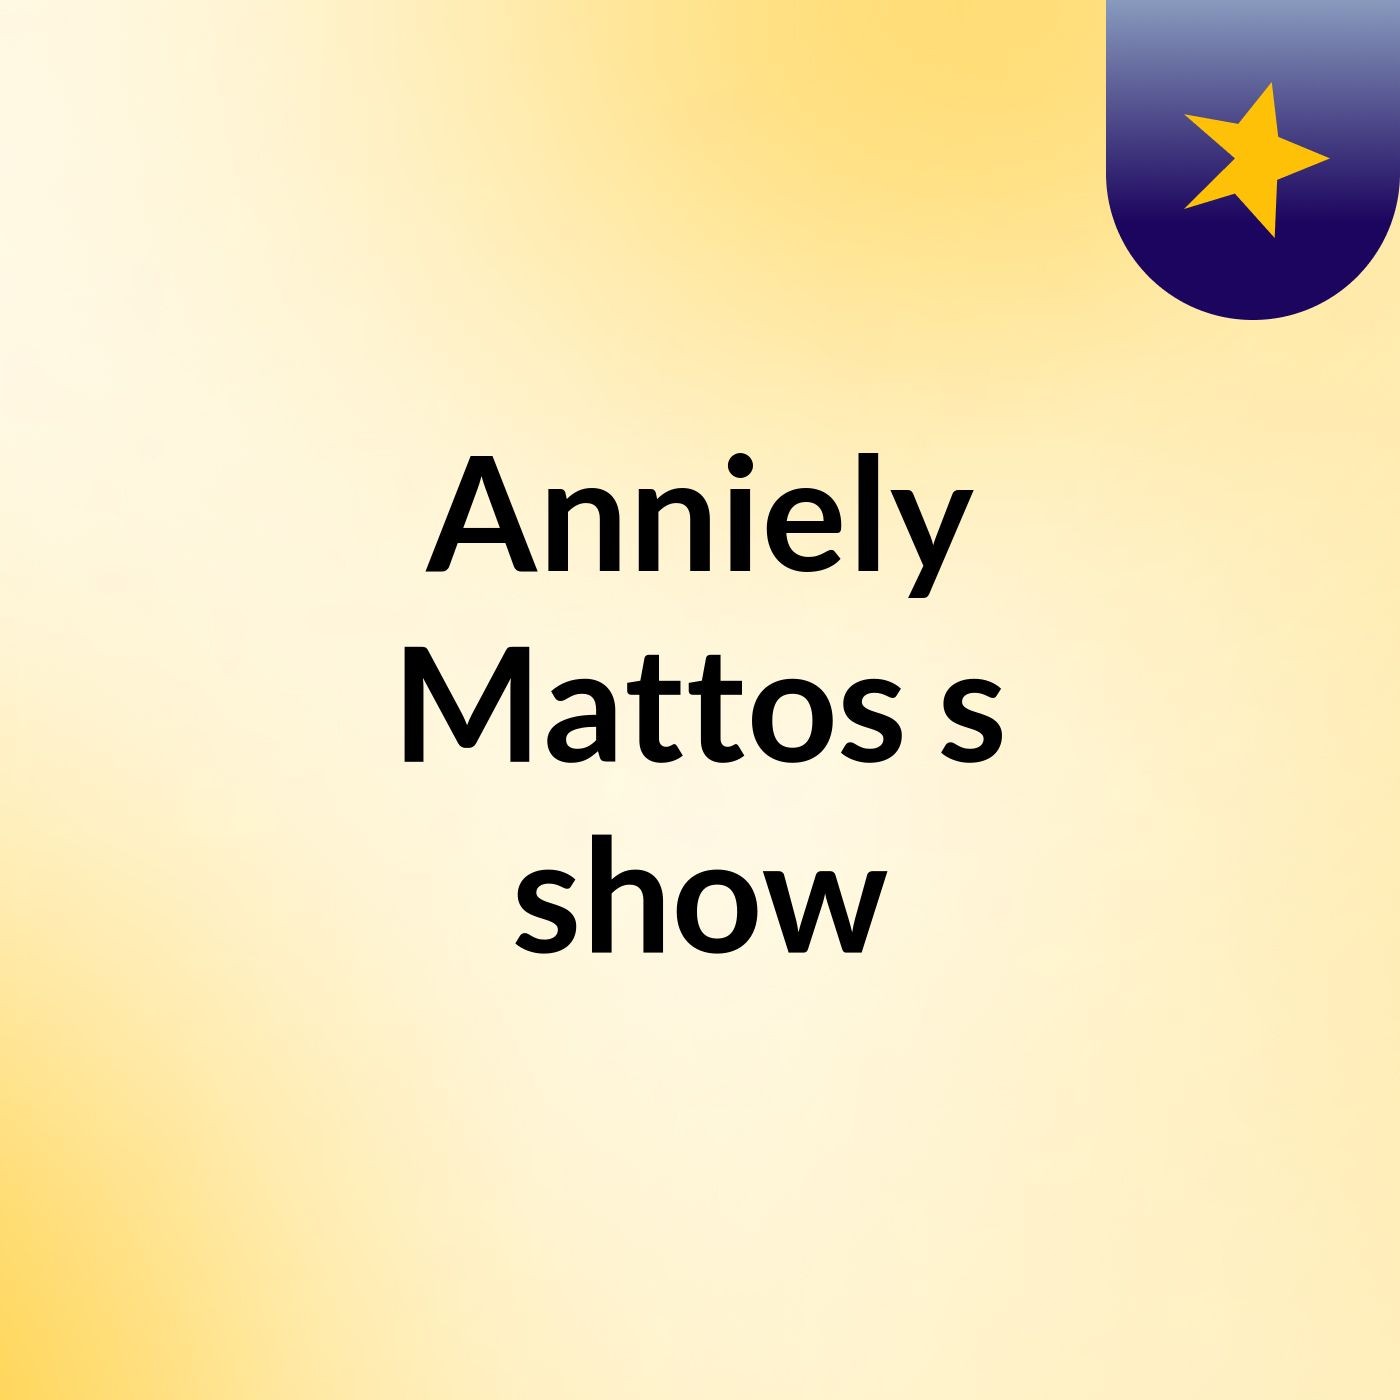 Anniely Mattos's show